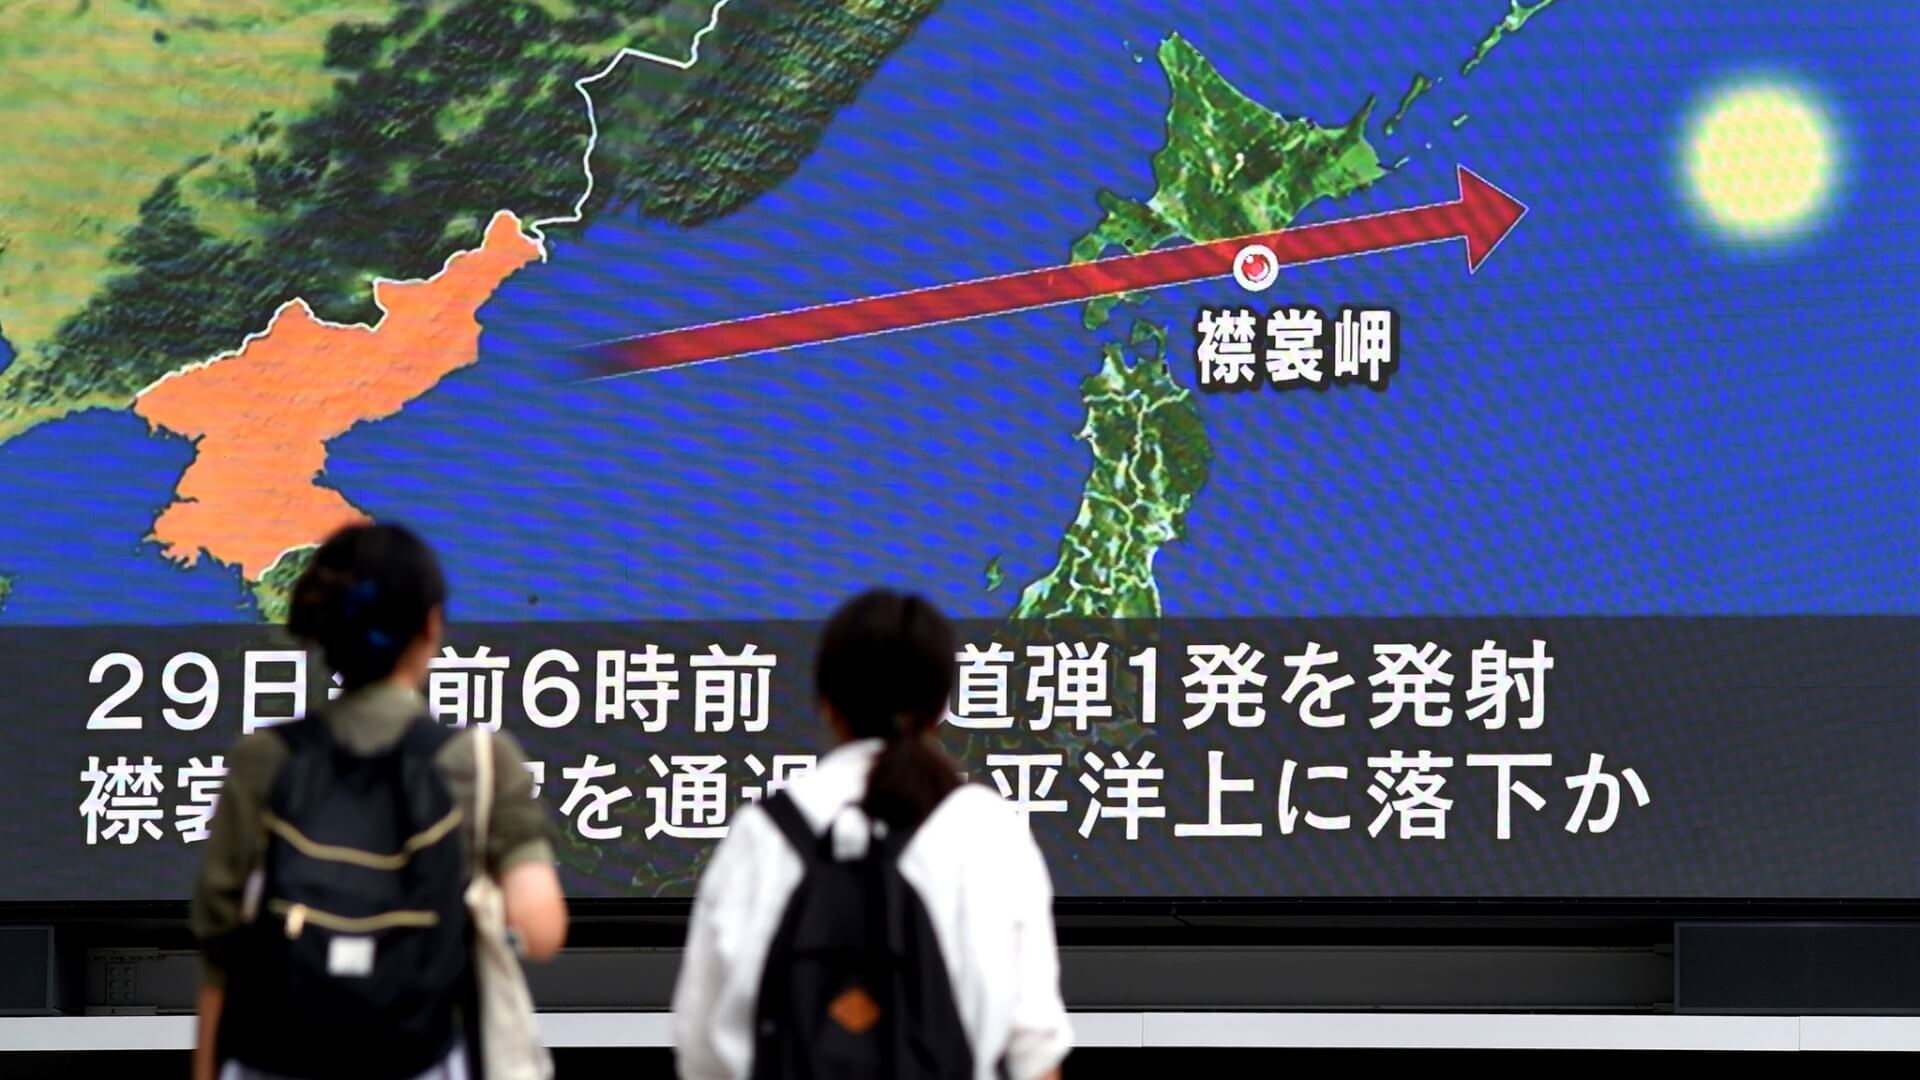 North Korea Fires Ballistic Missile Over Japan, Prompting Emergency Measures